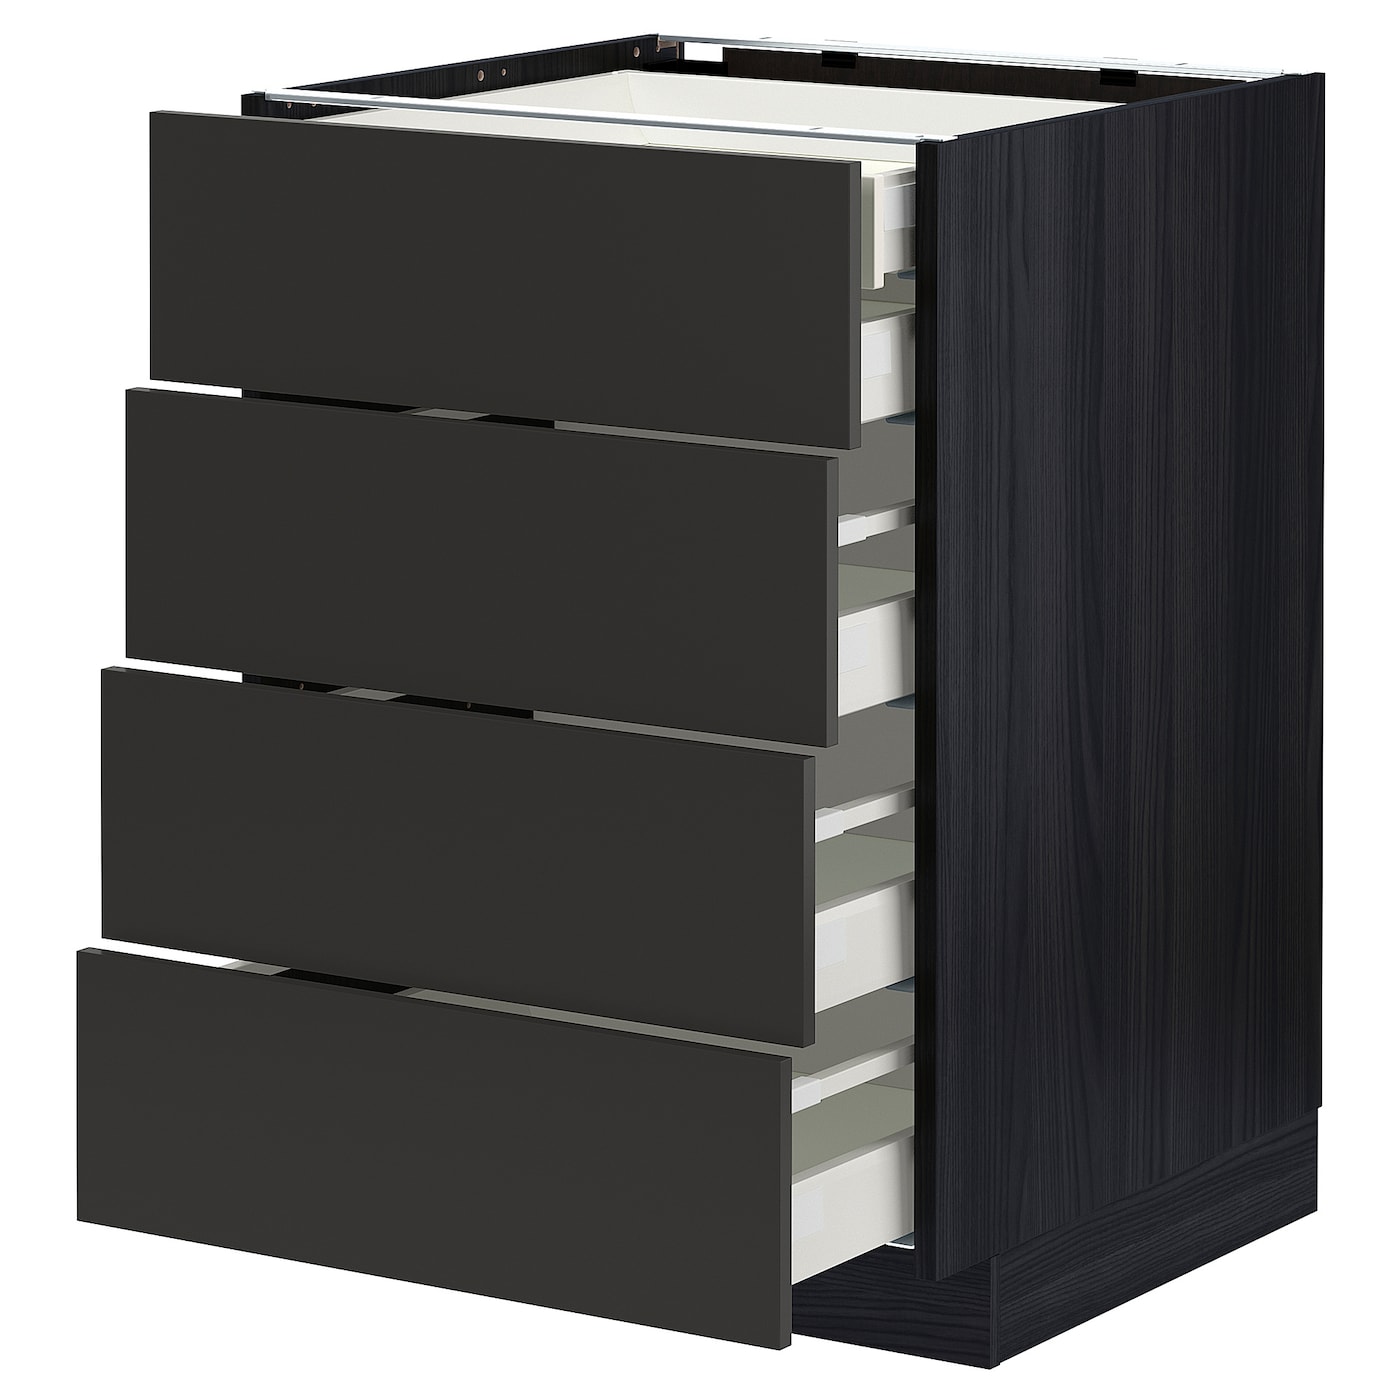 Напольный шкаф  - IKEA METOD MAXIMERA, 88x61,6x60см, черный, МЕТОД МАКСИМЕРА ИКЕА